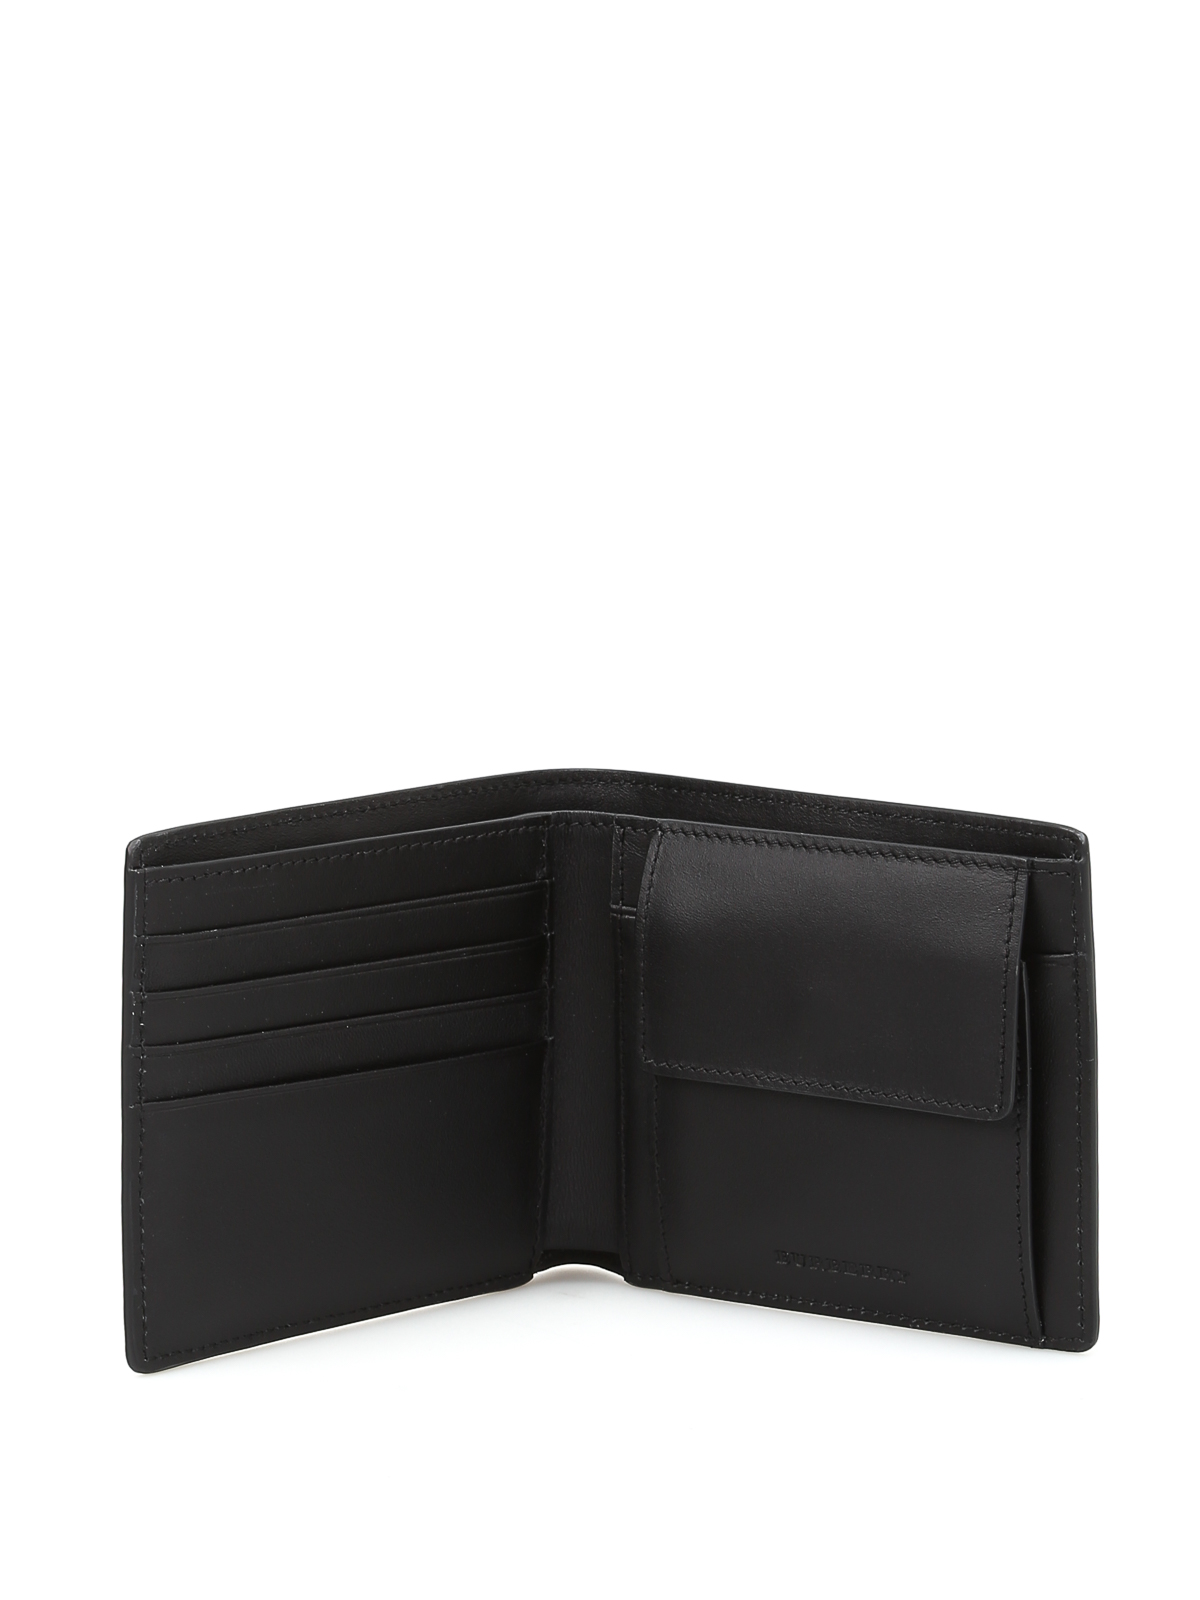 burberry wallet online